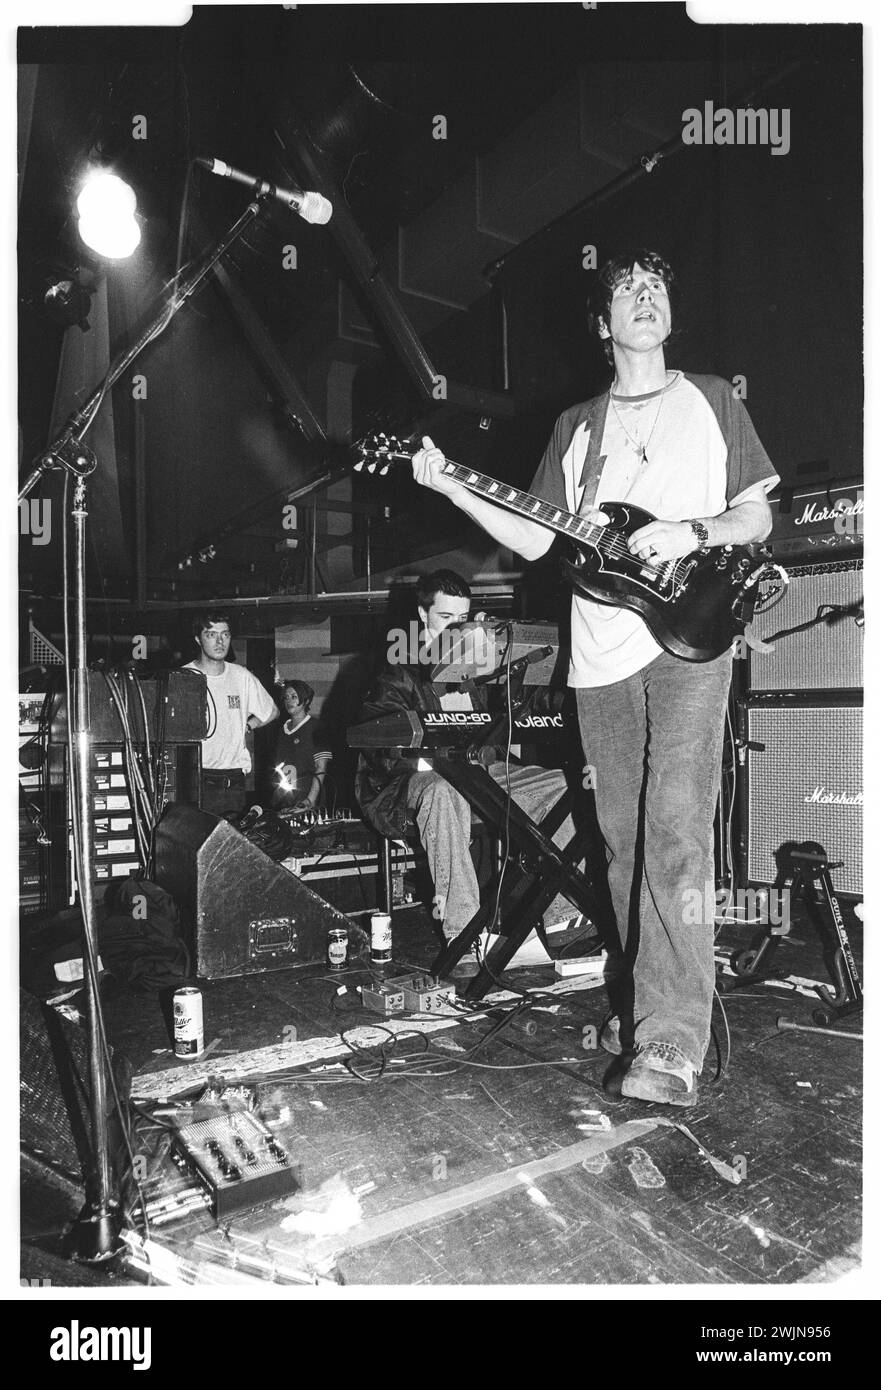 SUPER FURRY ANIMALS, FUZZY LOGIC TOUR, 1996: Un giovane Gruff Rhys della band gallese Super Furry Animals che suonava al terminal dell'Università di Cardiff durante il Fuzzy Logic Tour a Cardiff, Galles, Regno Unito, il 12 maggio 1996. Foto: Rob Watkins. INFO: Super Furry Animals, un gruppo musicale gallese di rock psichedelico formato nel 1993, ha portato un sound eclettico che mescola elementi rock, pop ed elettronici. Album come "Radiator" e "Fuzzy Logic" hanno mostrato il loro approccio inventivo e sfidante al genere, consolidando il loro status di pionieri nella scena musicale alternativa. Foto Stock